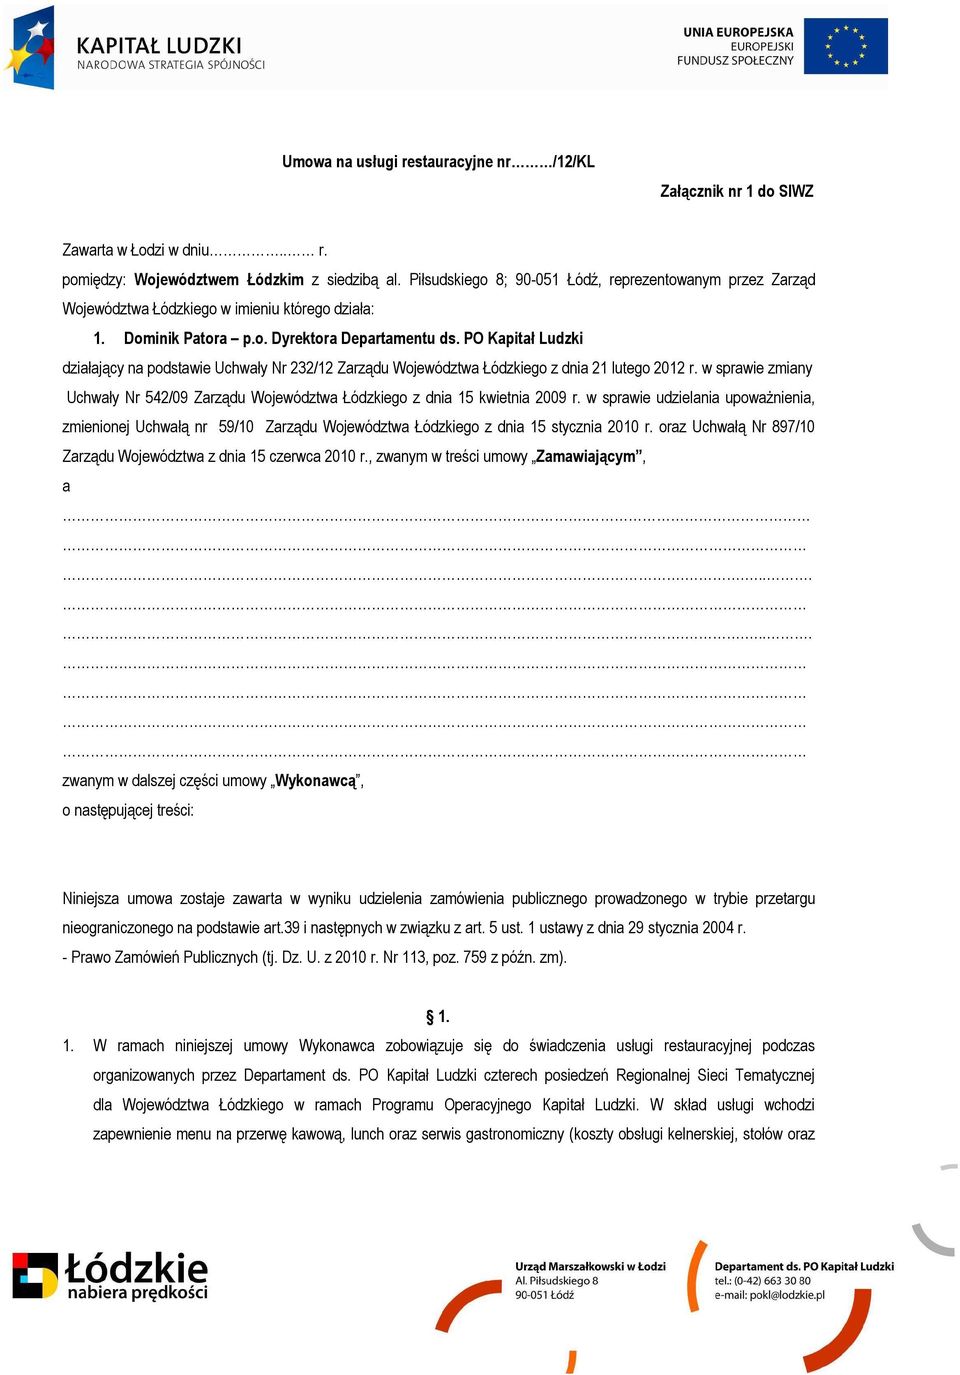 PO Kapitał Ludzki działający na podstawie Uchwały Nr 232/12 Zarządu Województwa Łódzkiego z dnia 21 lutego 2012 r.